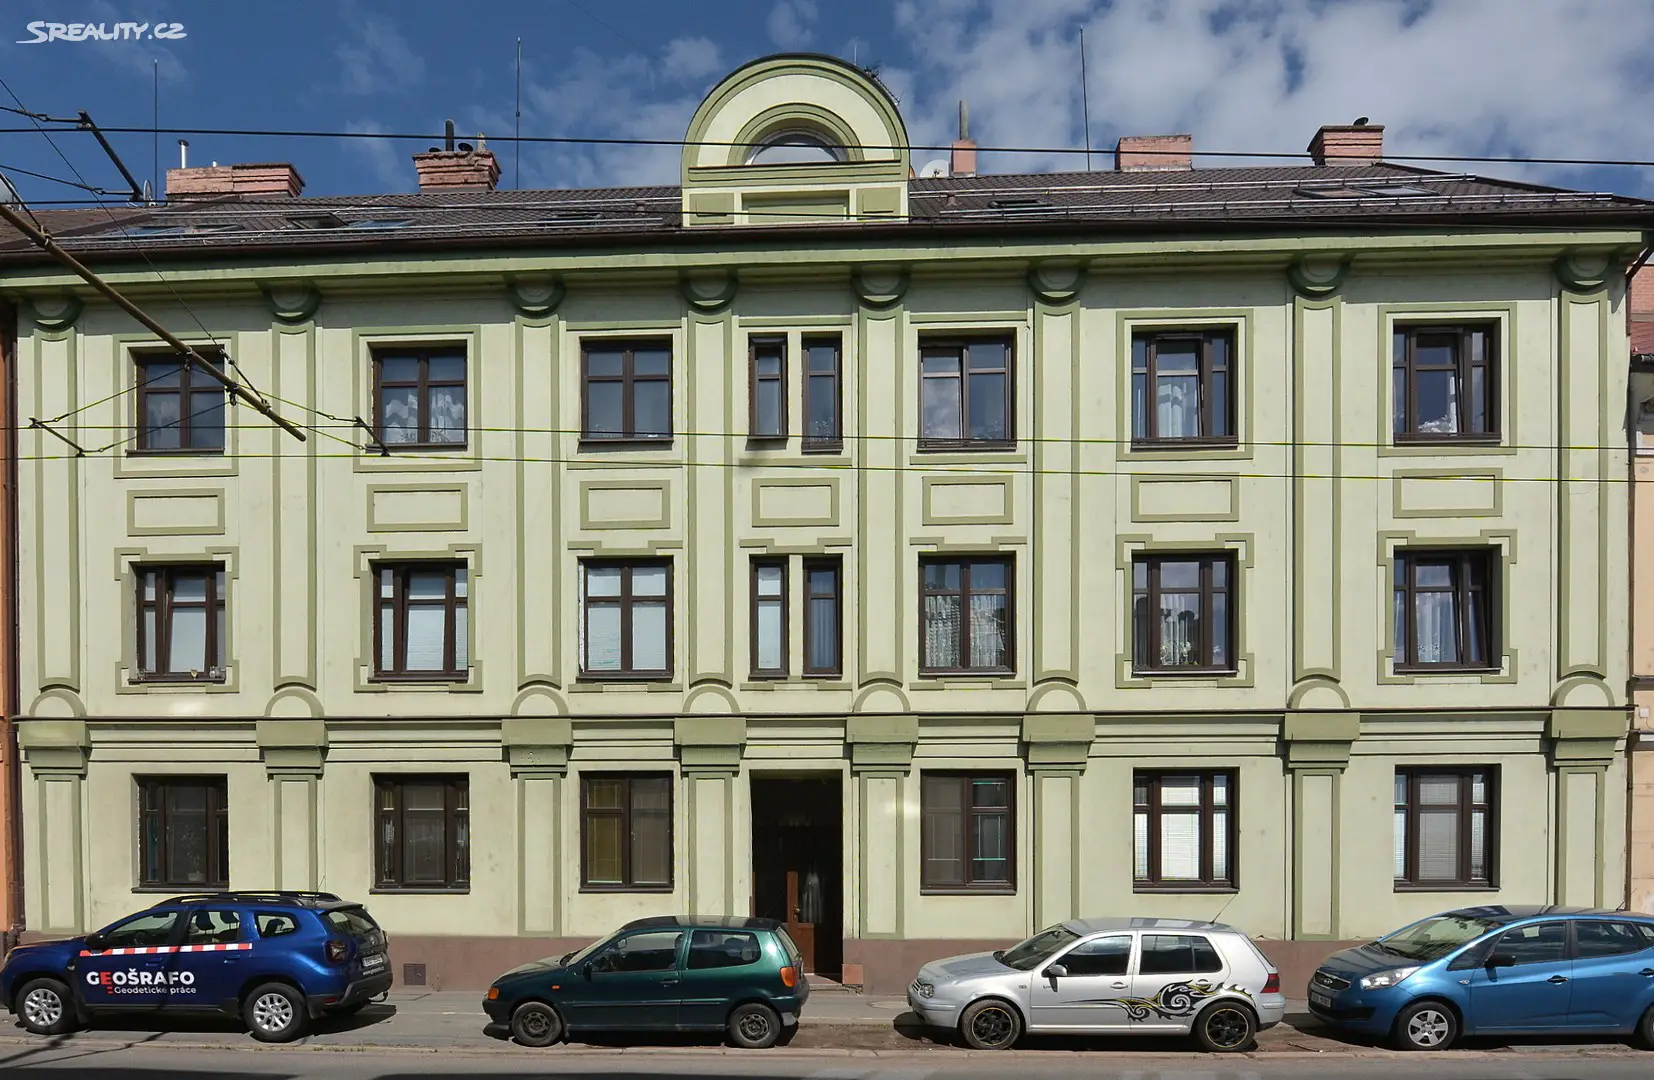 Prodej bytu 2+1 65 m², Pražská třída, Hradec Králové